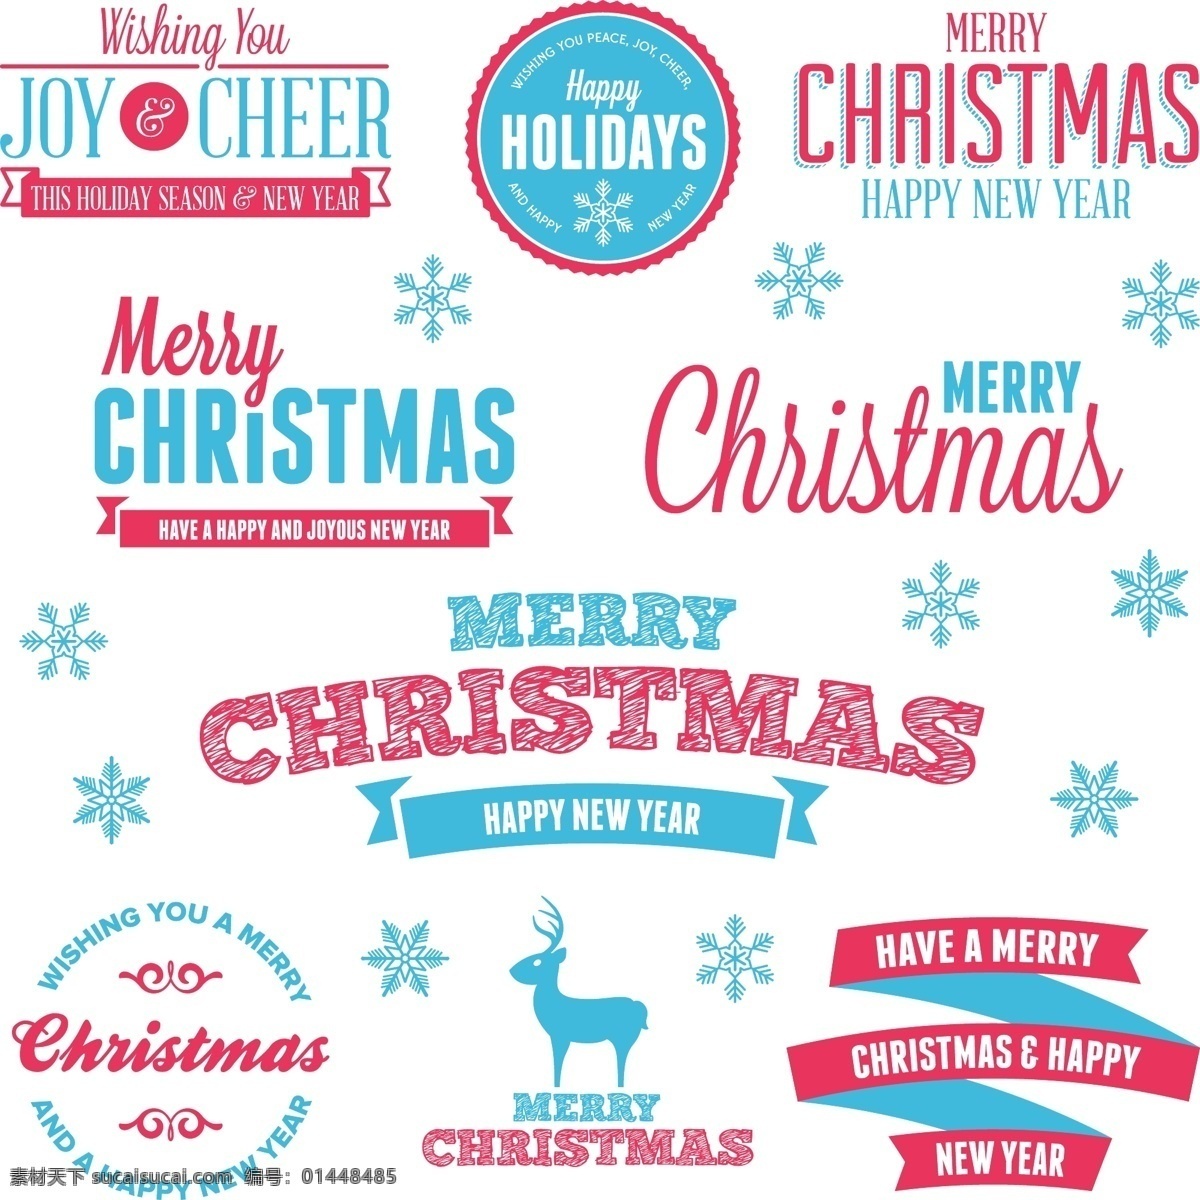 圣诞节 标贴 模板 christmas merry 边框 标签 剪影 麋鹿 设计稿 雪花 艺术字 节日大全 源文件 节日素材